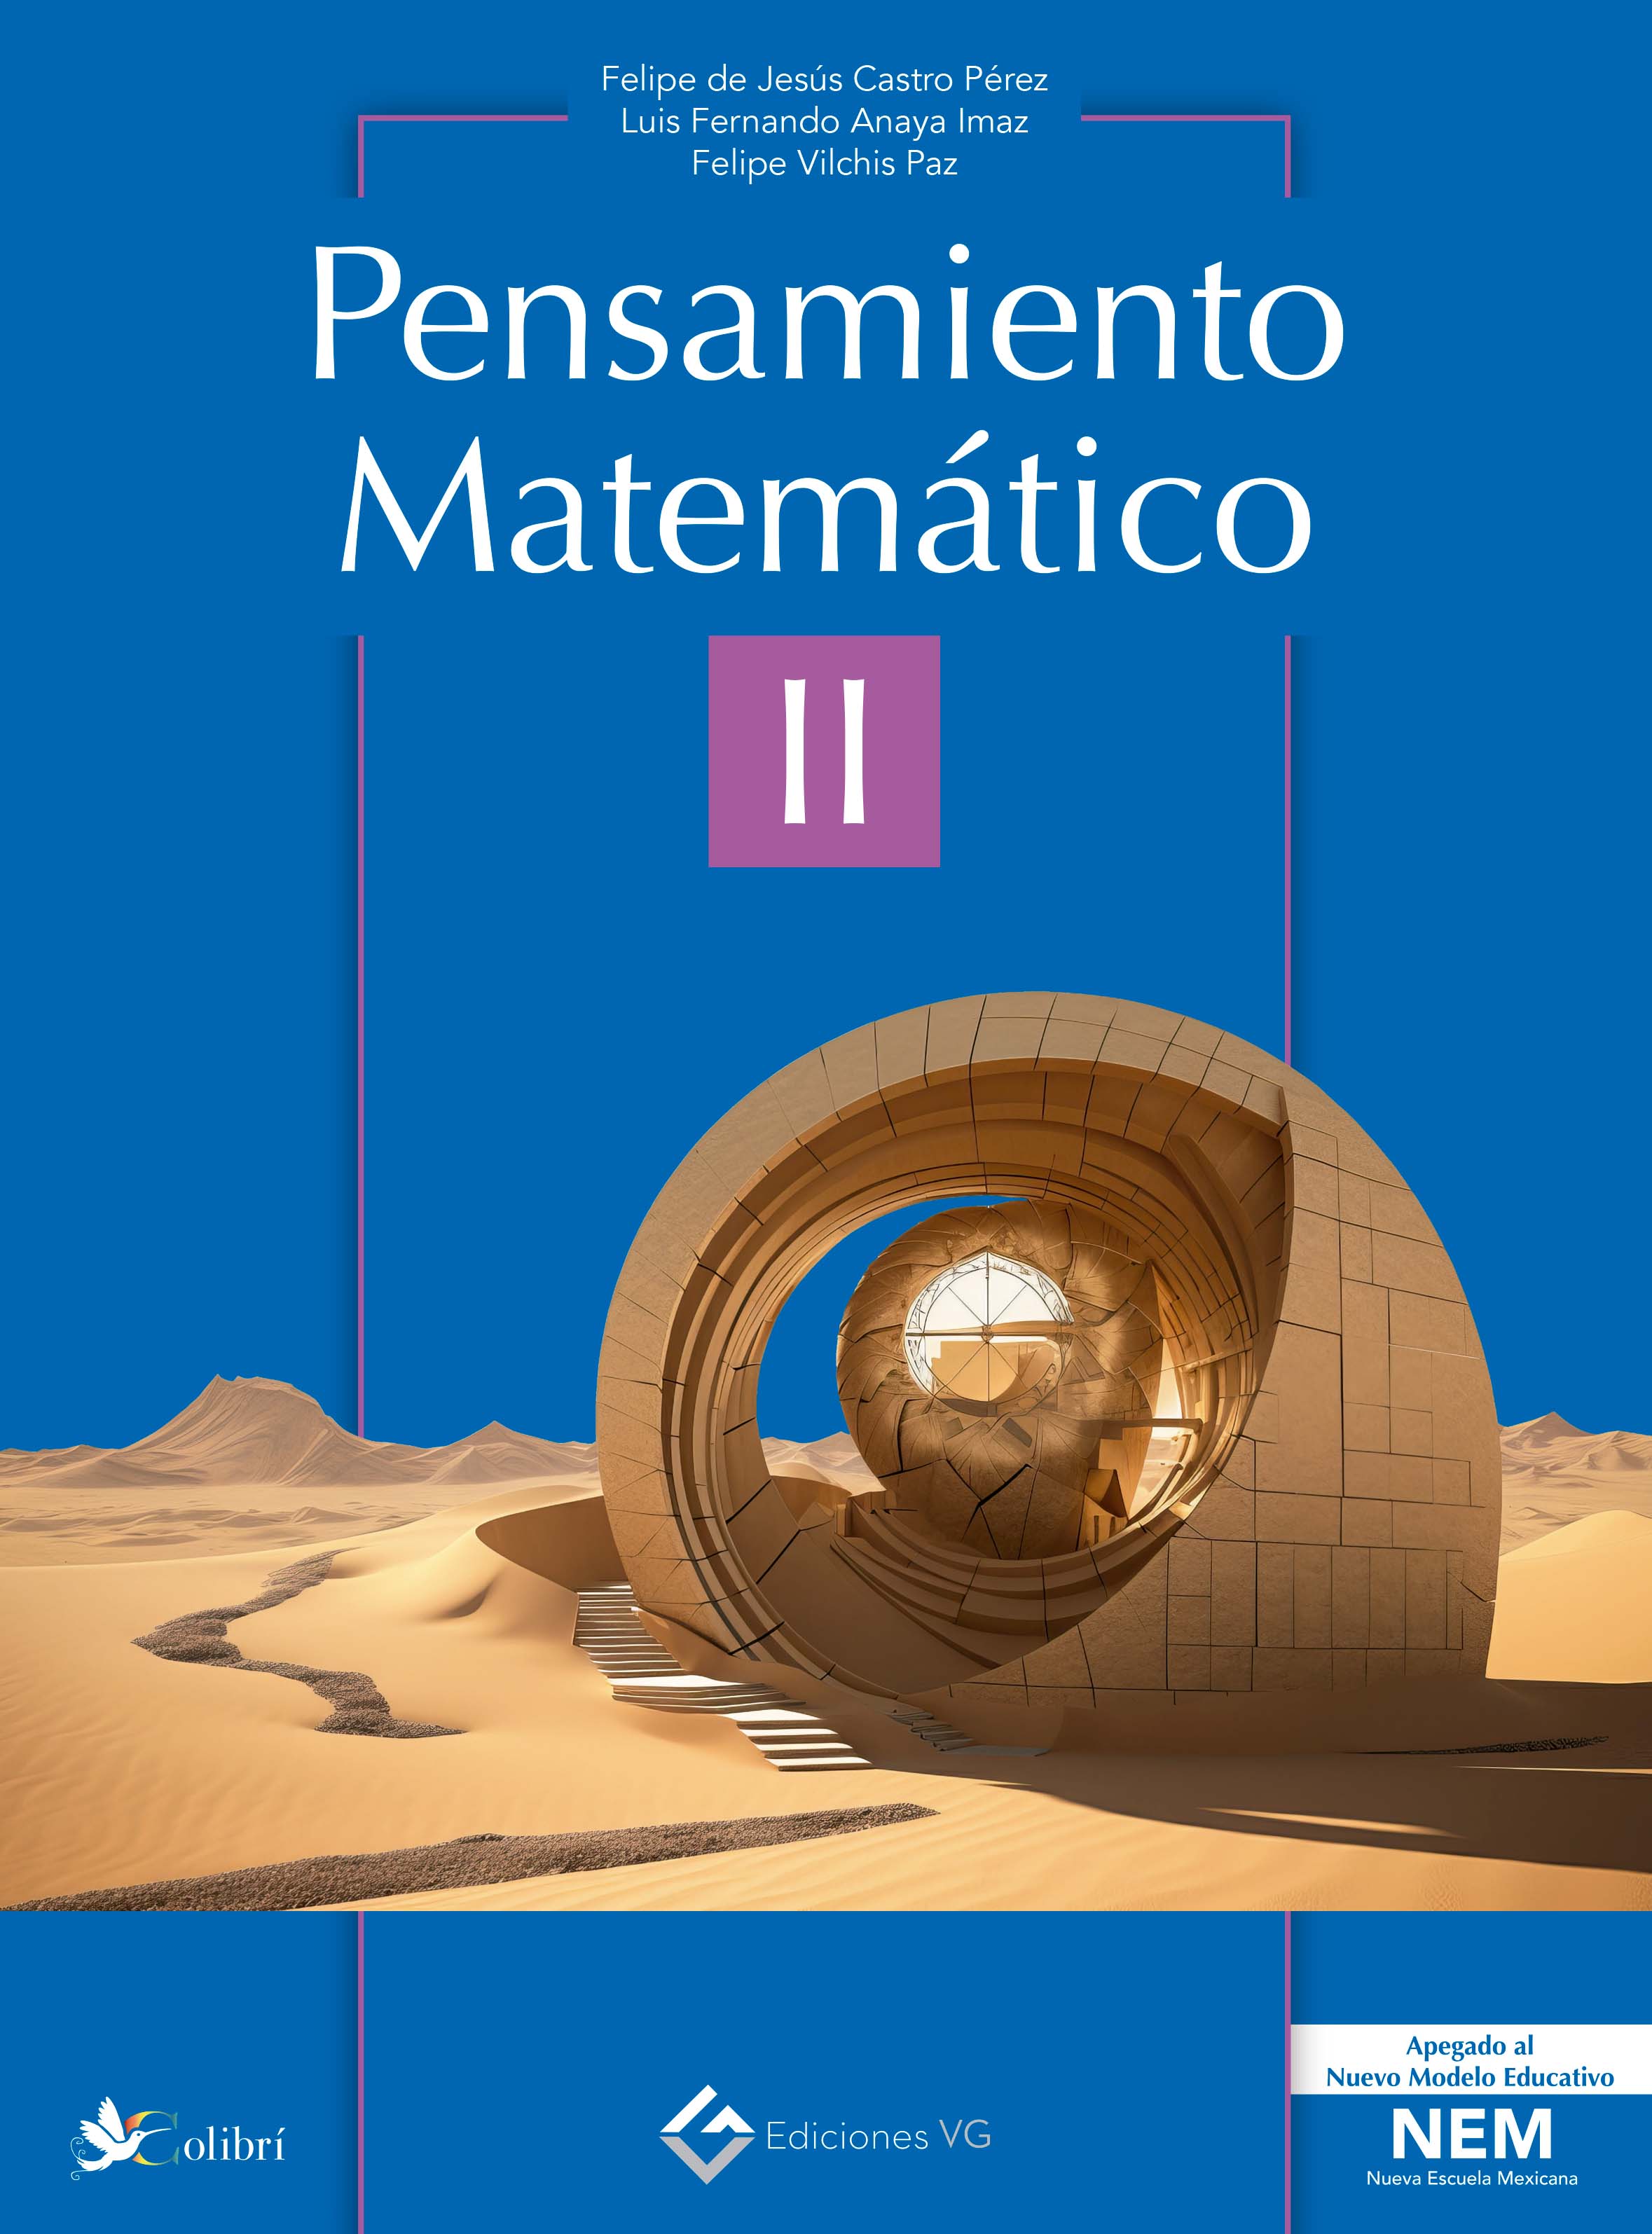 Course Image Pensamiento Matemático II